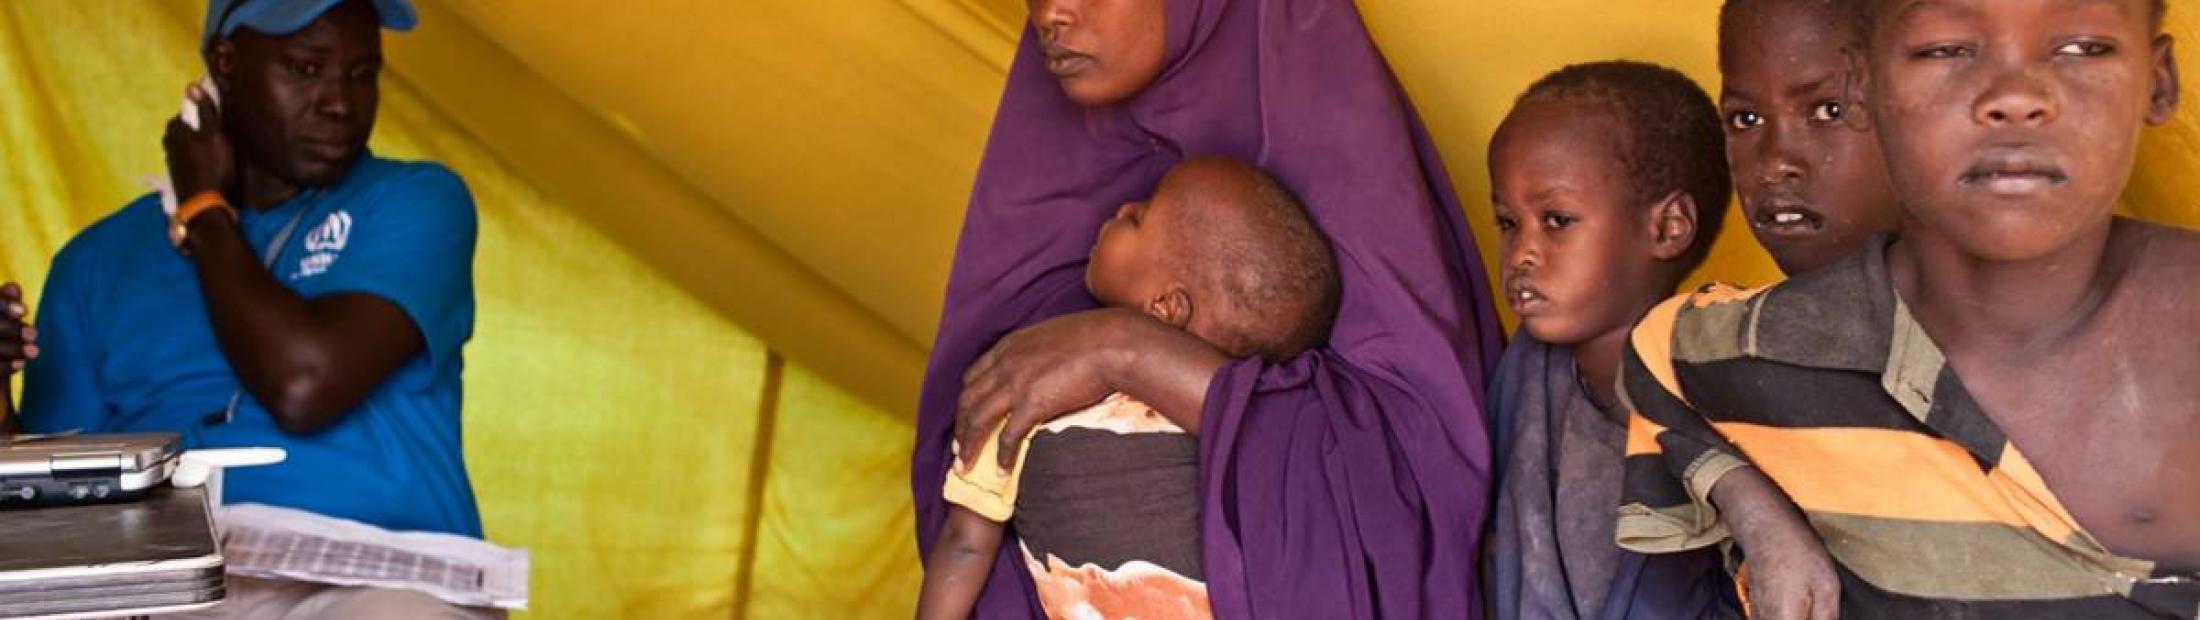 La Diputación de Valencia apoya a los refugiados somalíes en Kenia